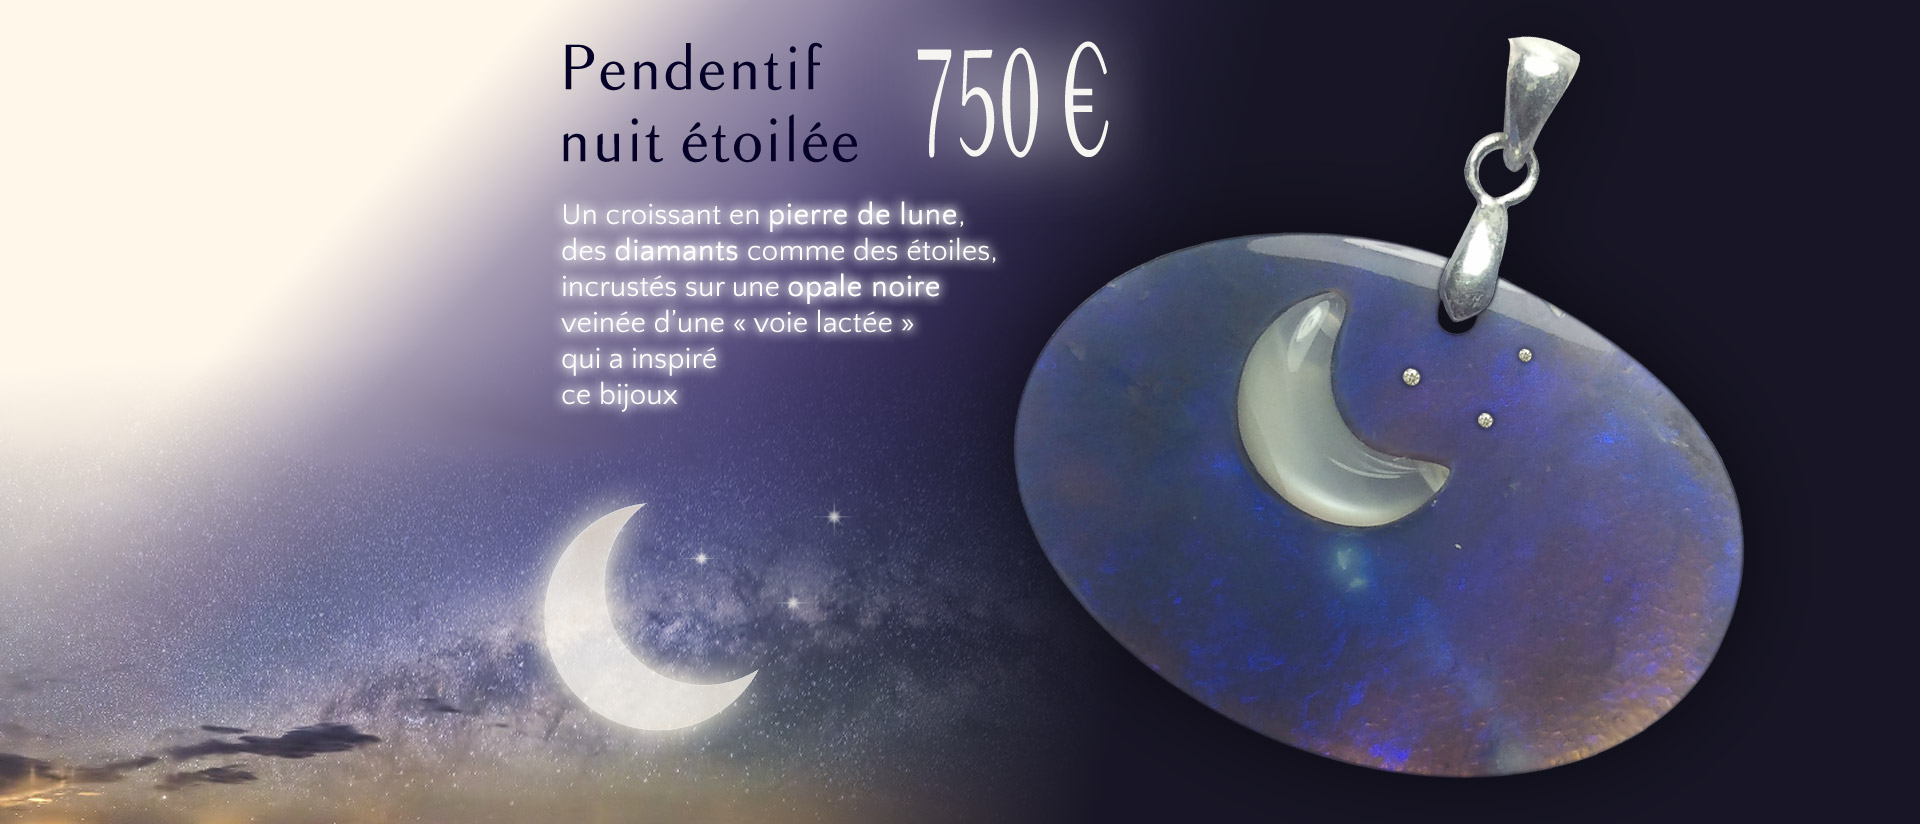 Pendentif Nuit Etoilee Opale Noire Voie Lactee Diamants Pierre De Lune